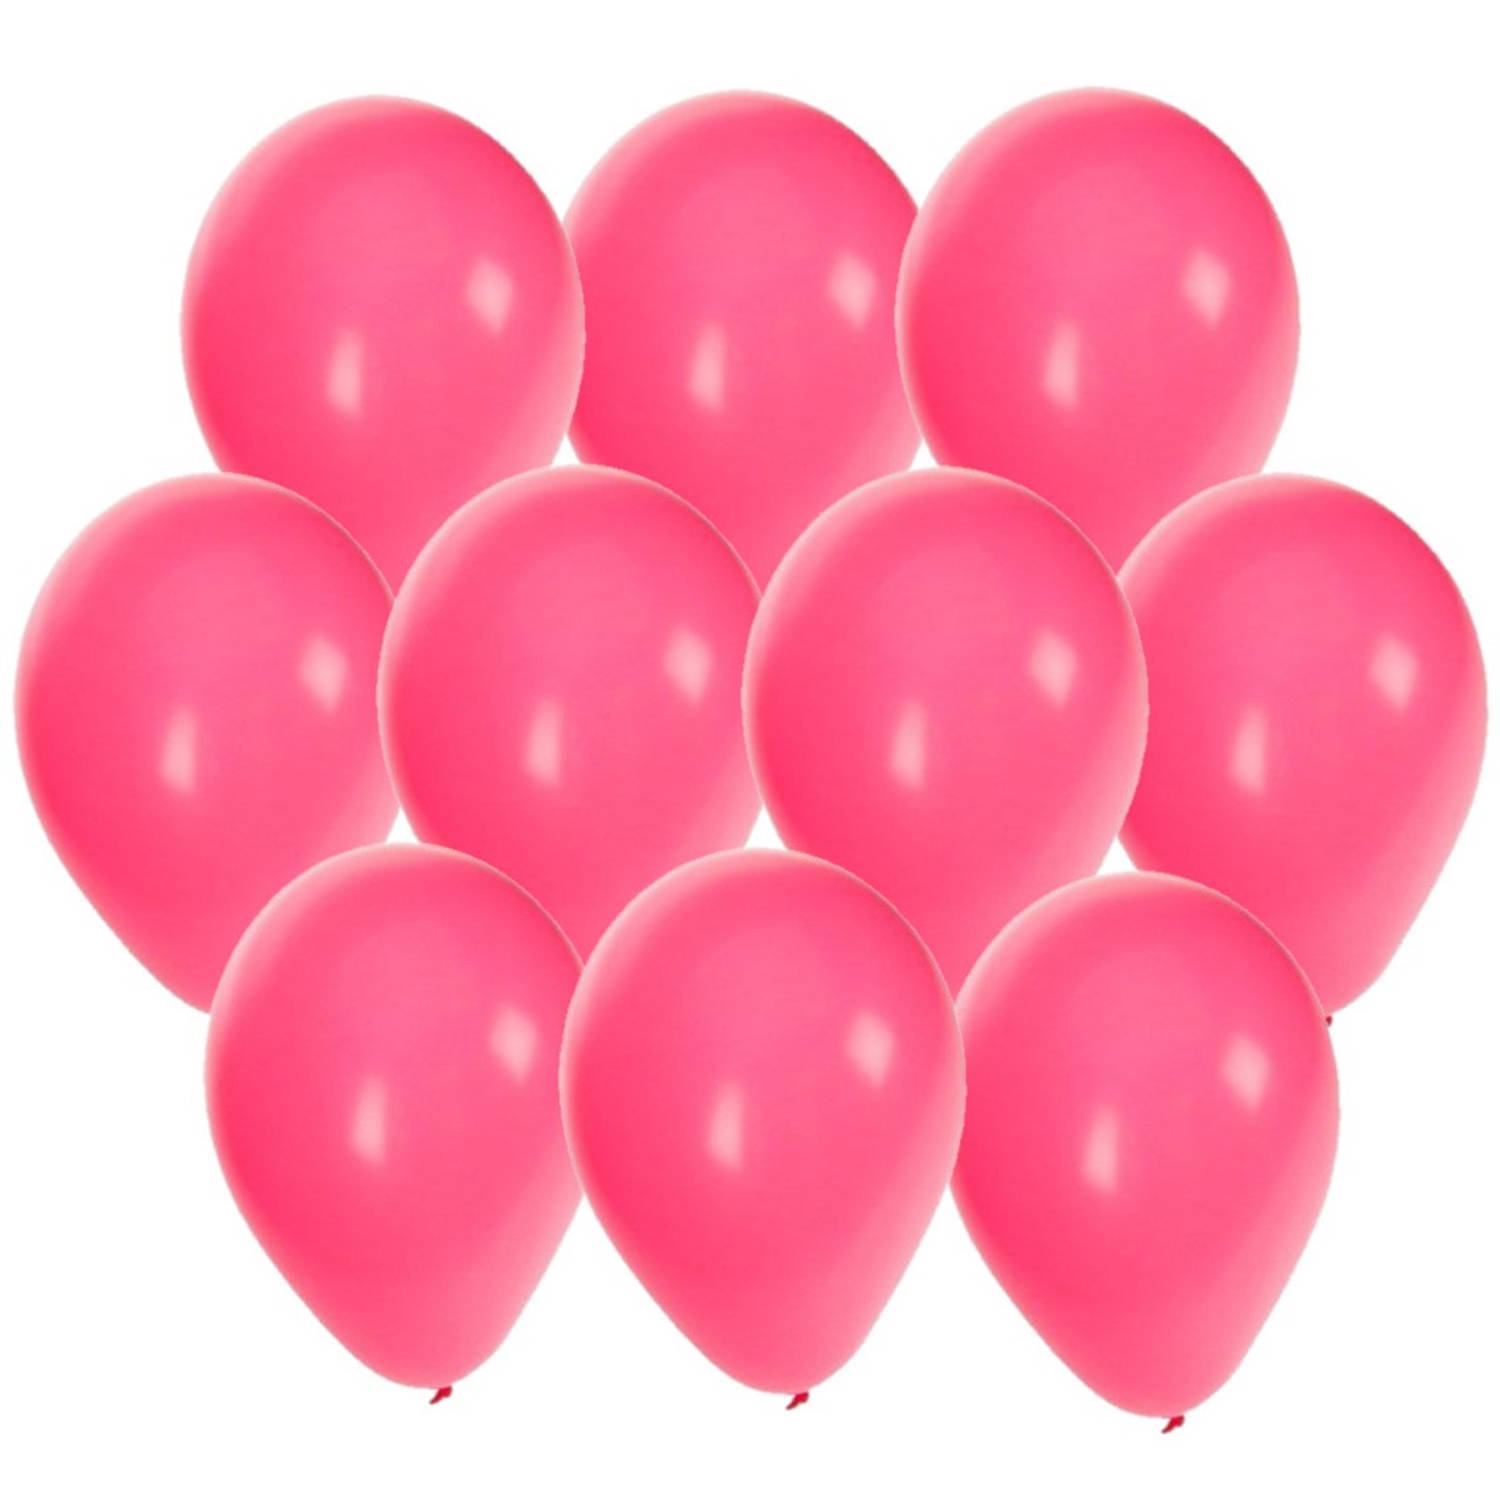 30x stuks Roze party ballonnen 27 cm - Ballonnen